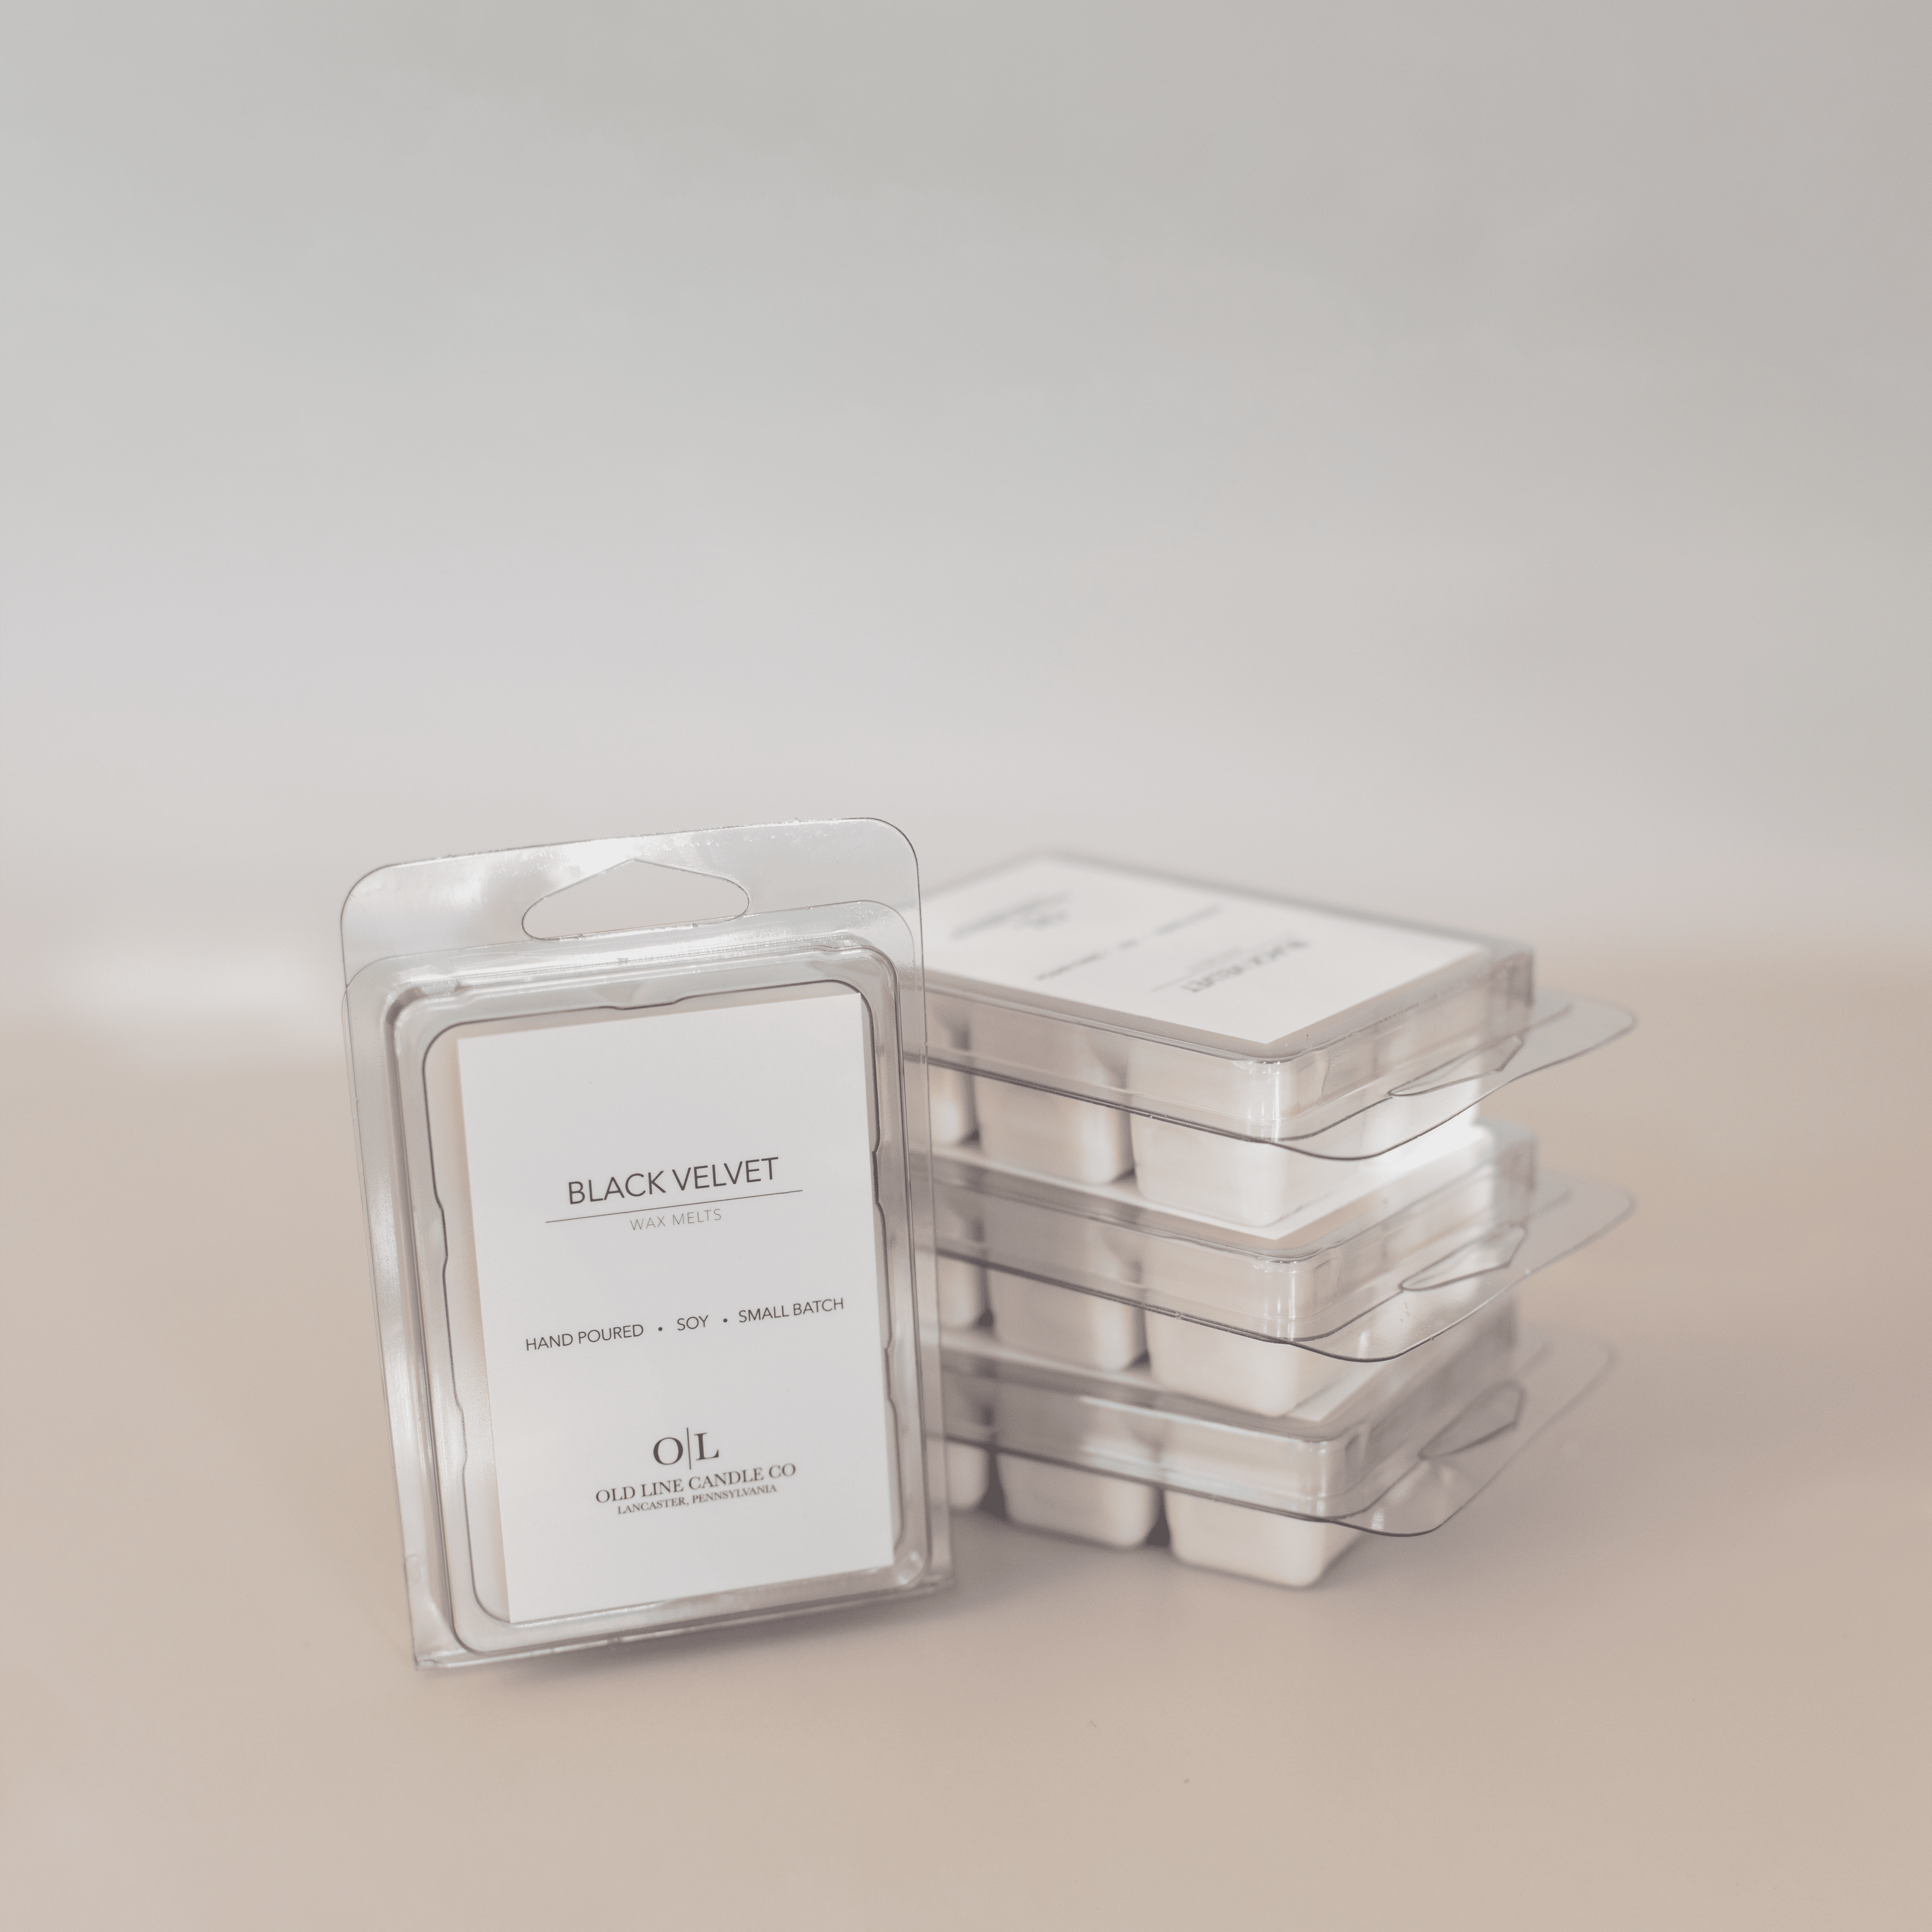 Mini Cube Wax Melts Kit